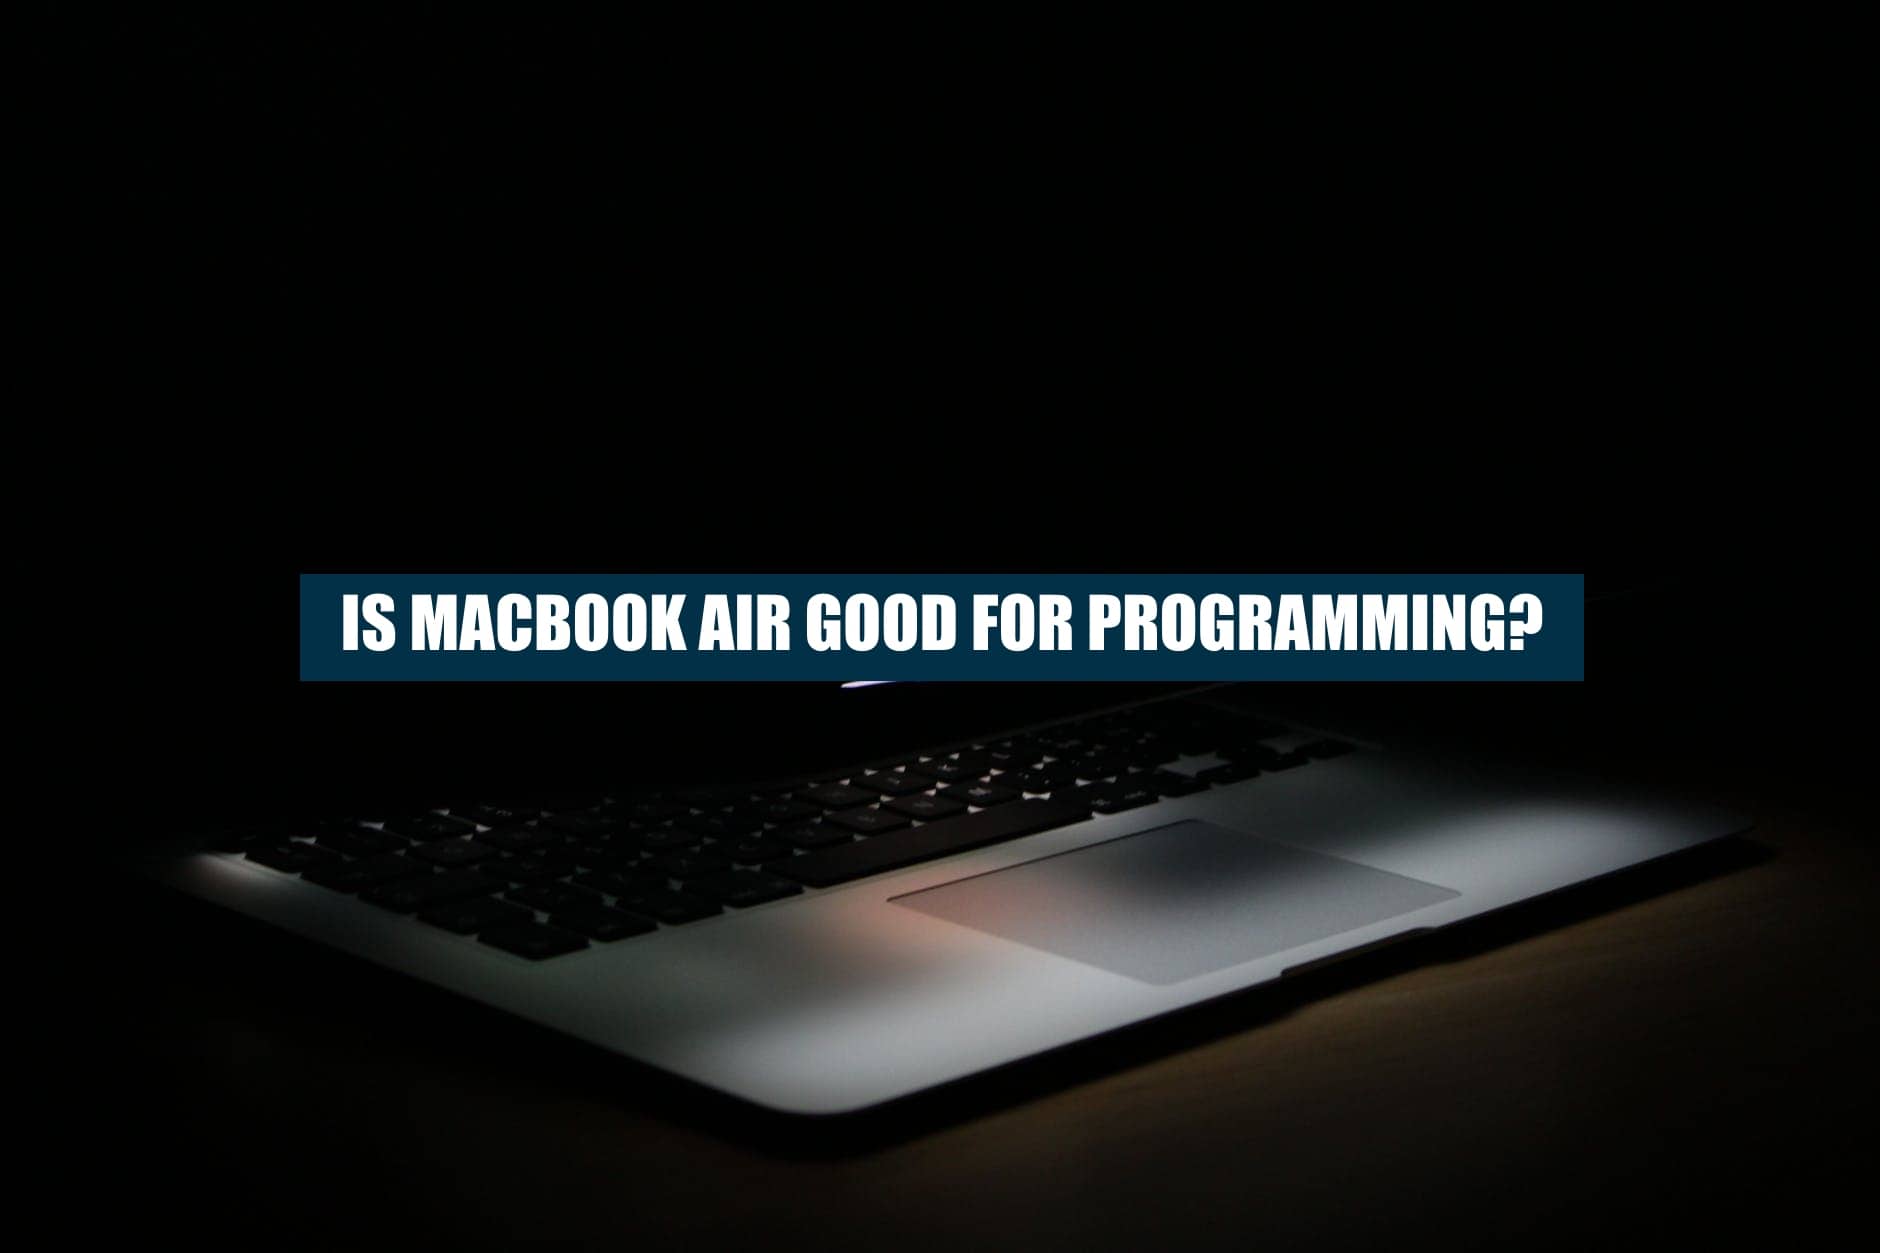 macbook air for progamming good or bad